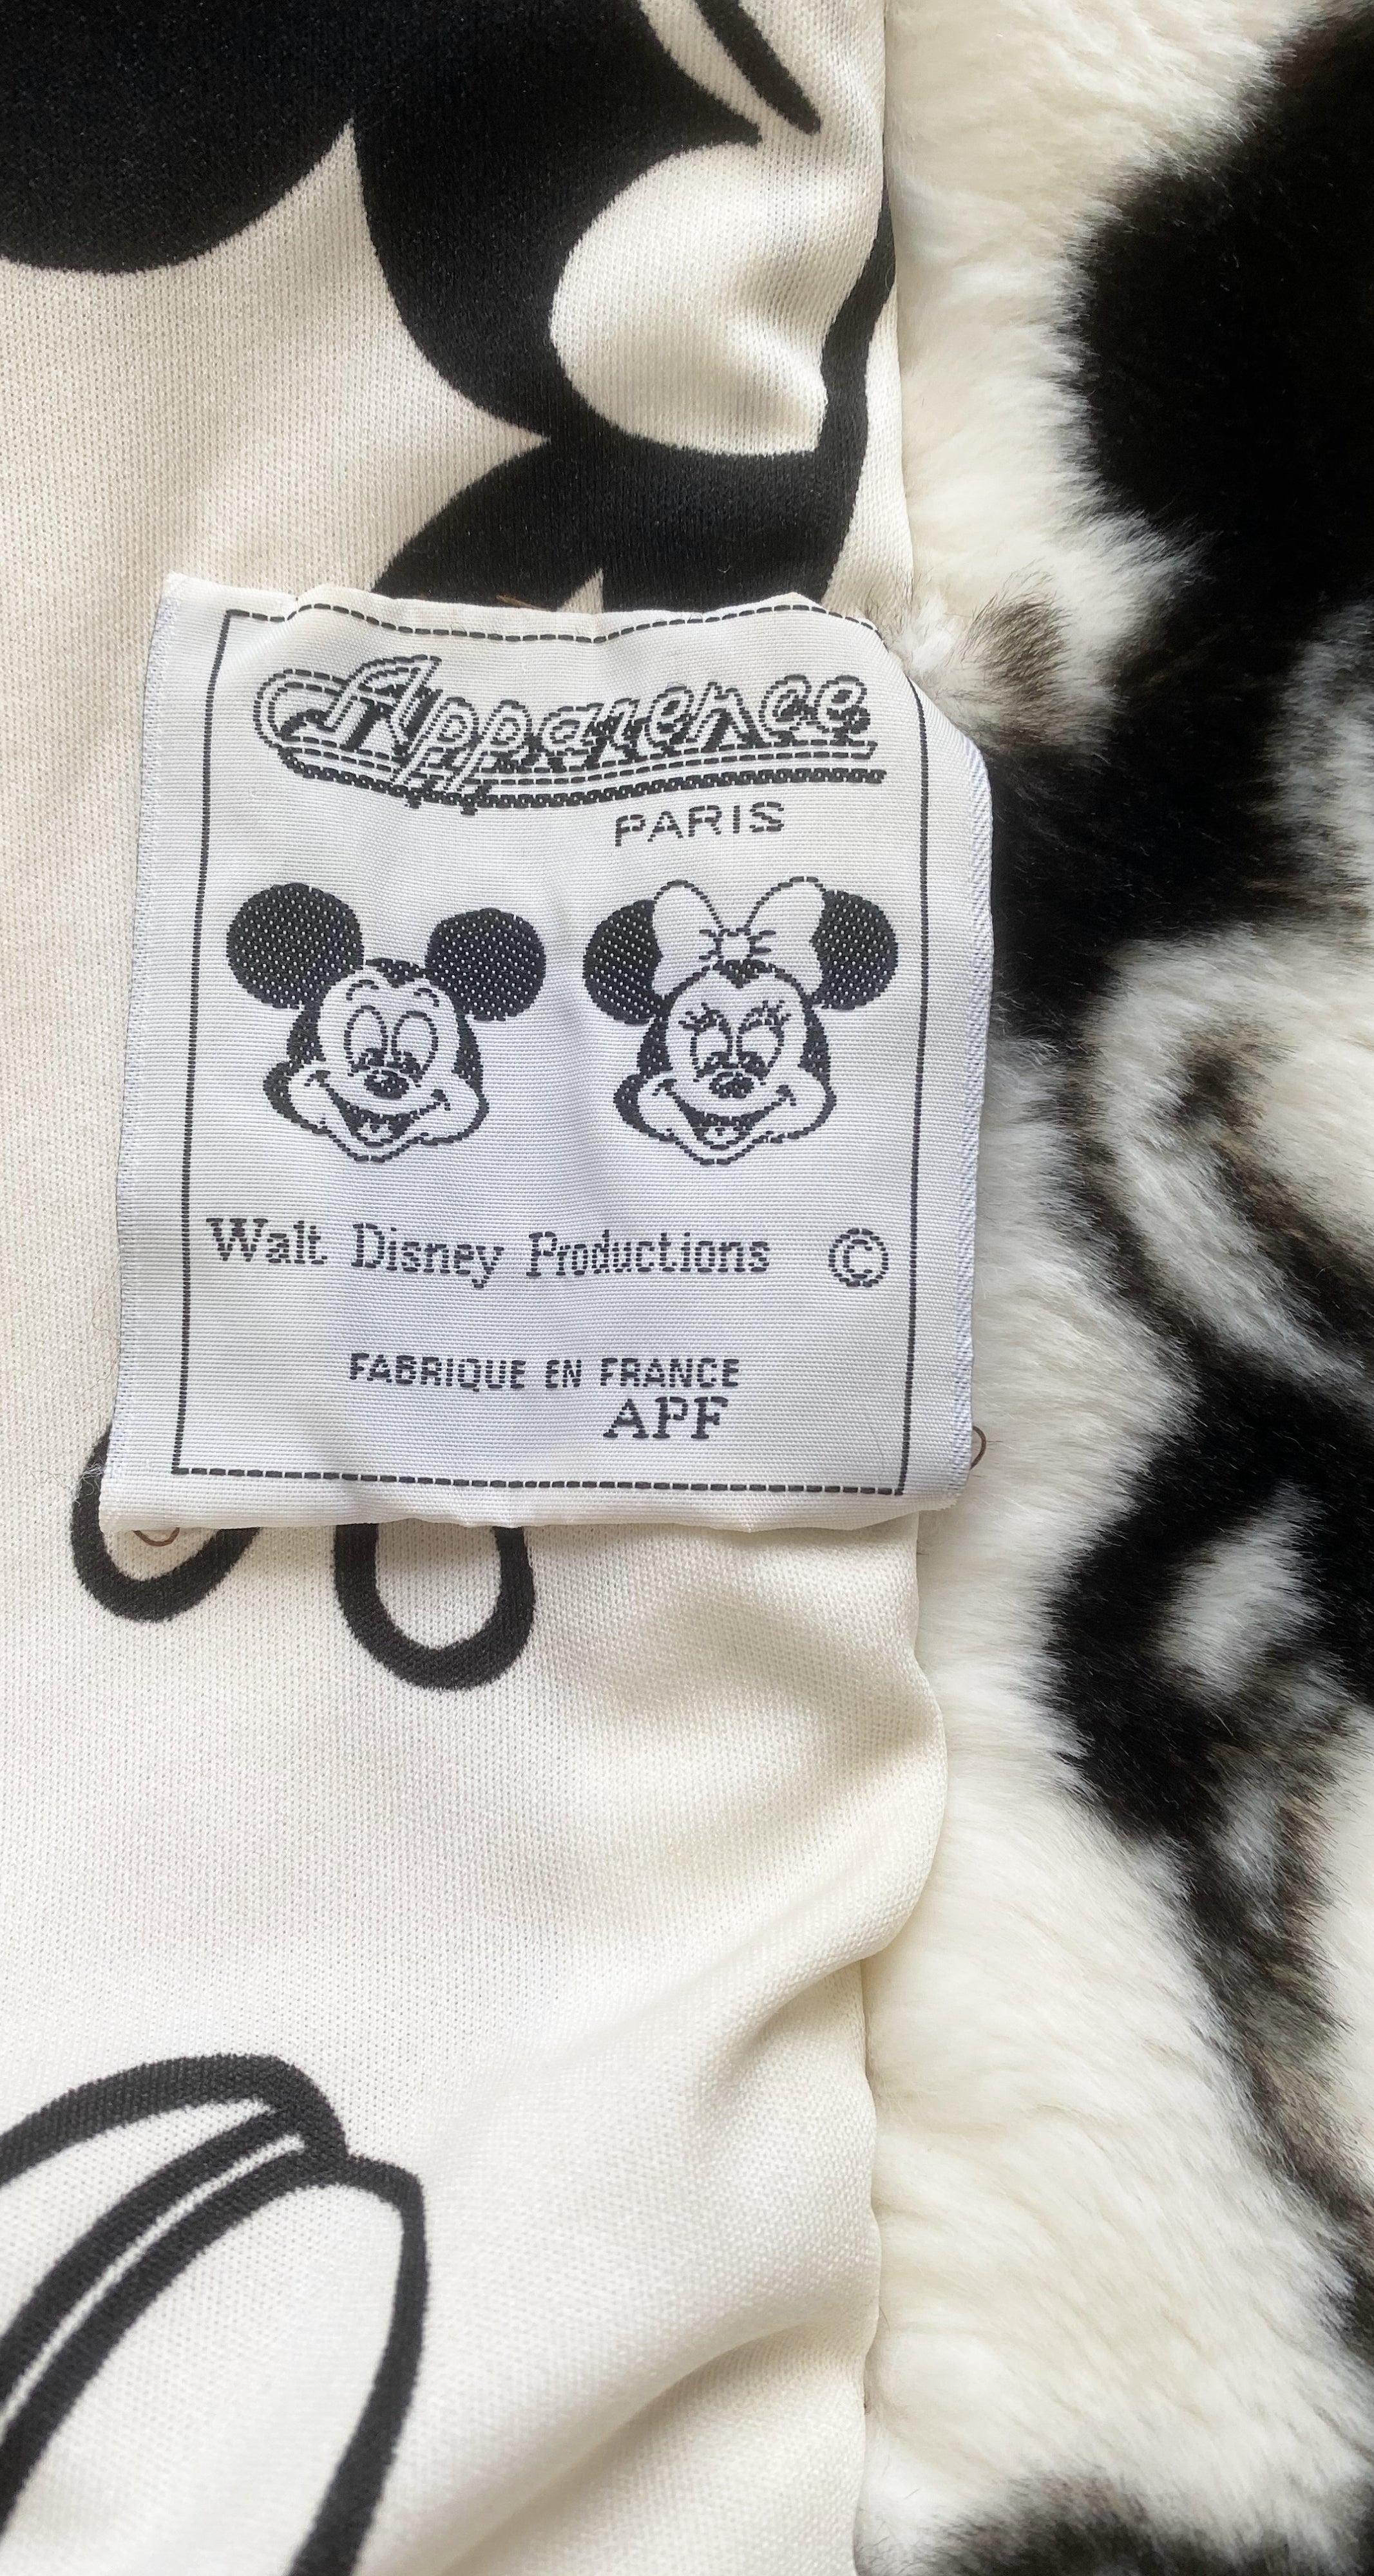 Apparence Paris 1990s Vintage Mickey Mouse Disney Print Faux Fur Coat ...